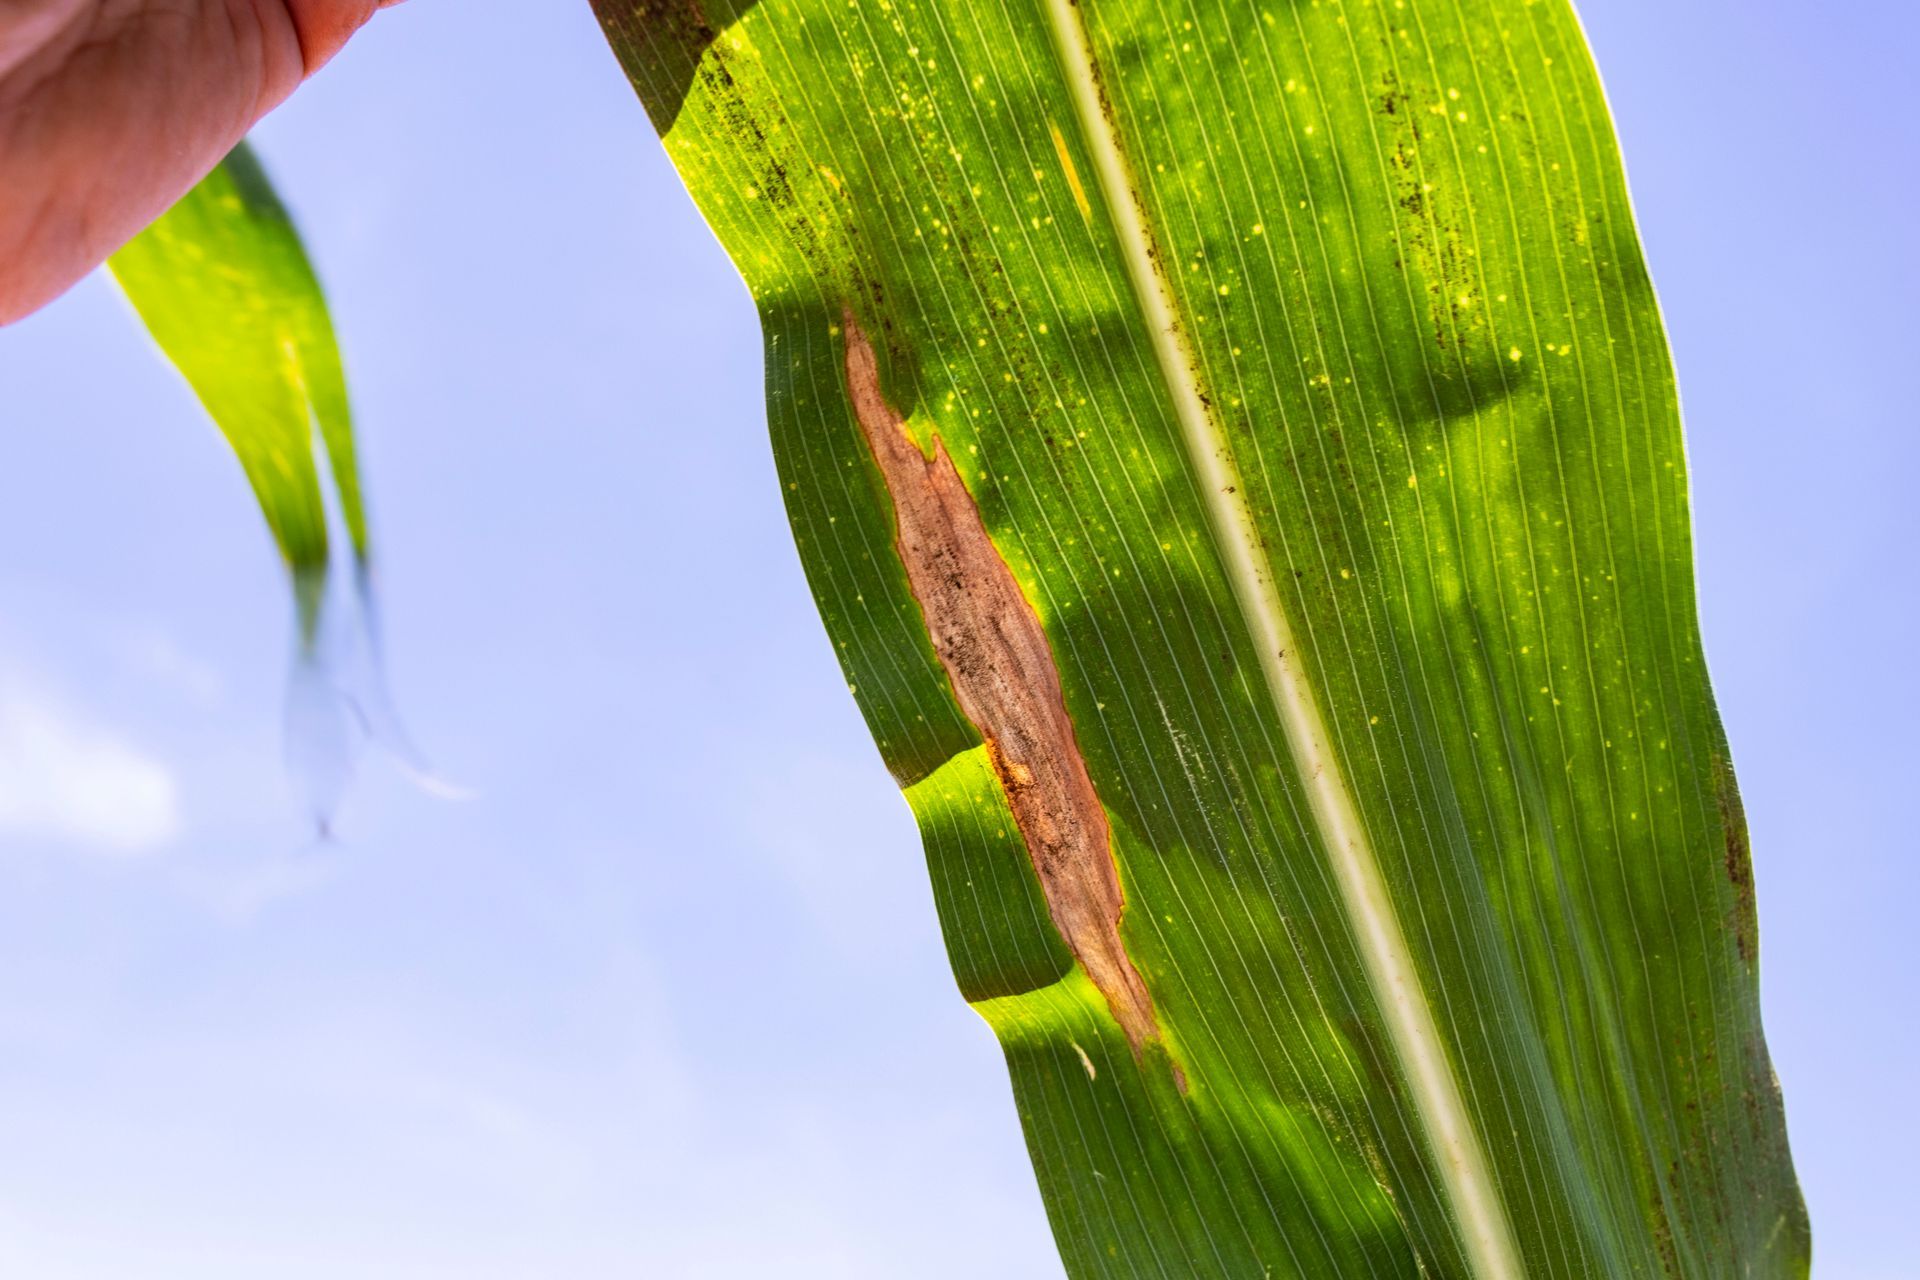 Fotografia mostra uma folha da planta de milho com sintomas de doenças foliares. 